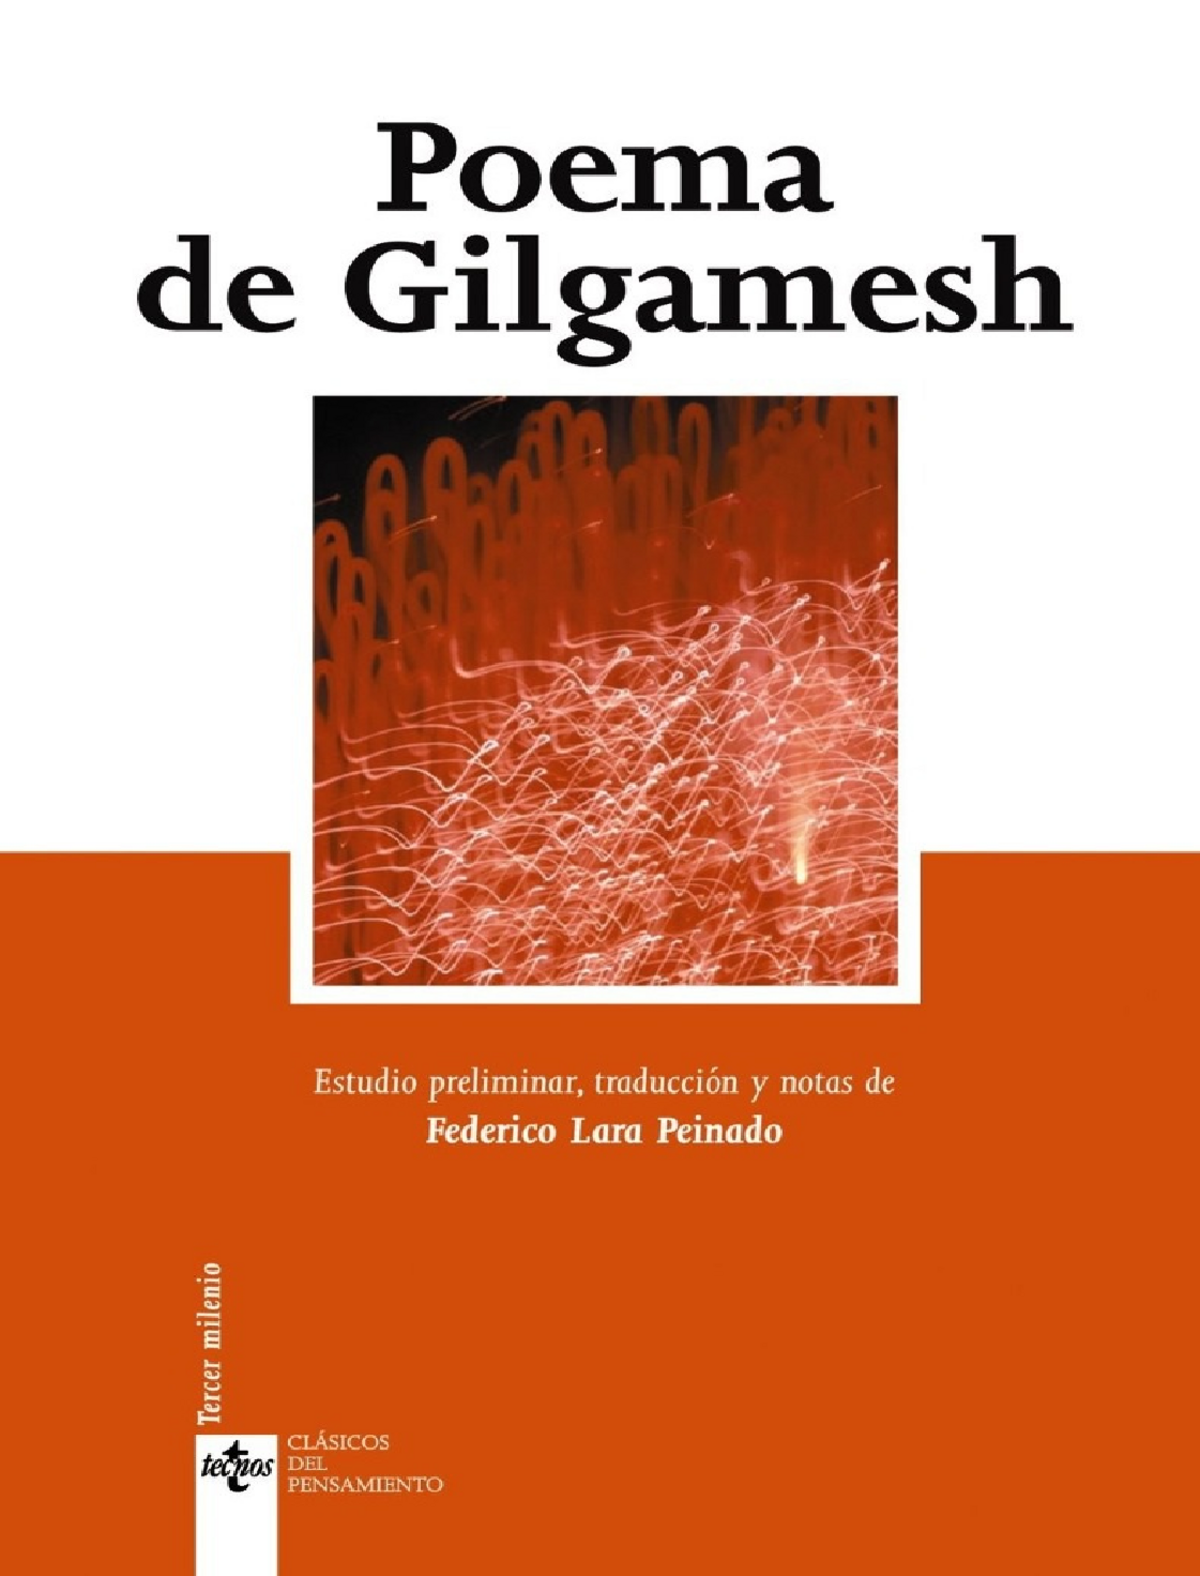 Poema de Gilgamesh Federico Lara Peinado - 1 POEMA DE GILGAMESH: UN VIAJE  FALLIDO A LA INMORTALIDAD - Studocu